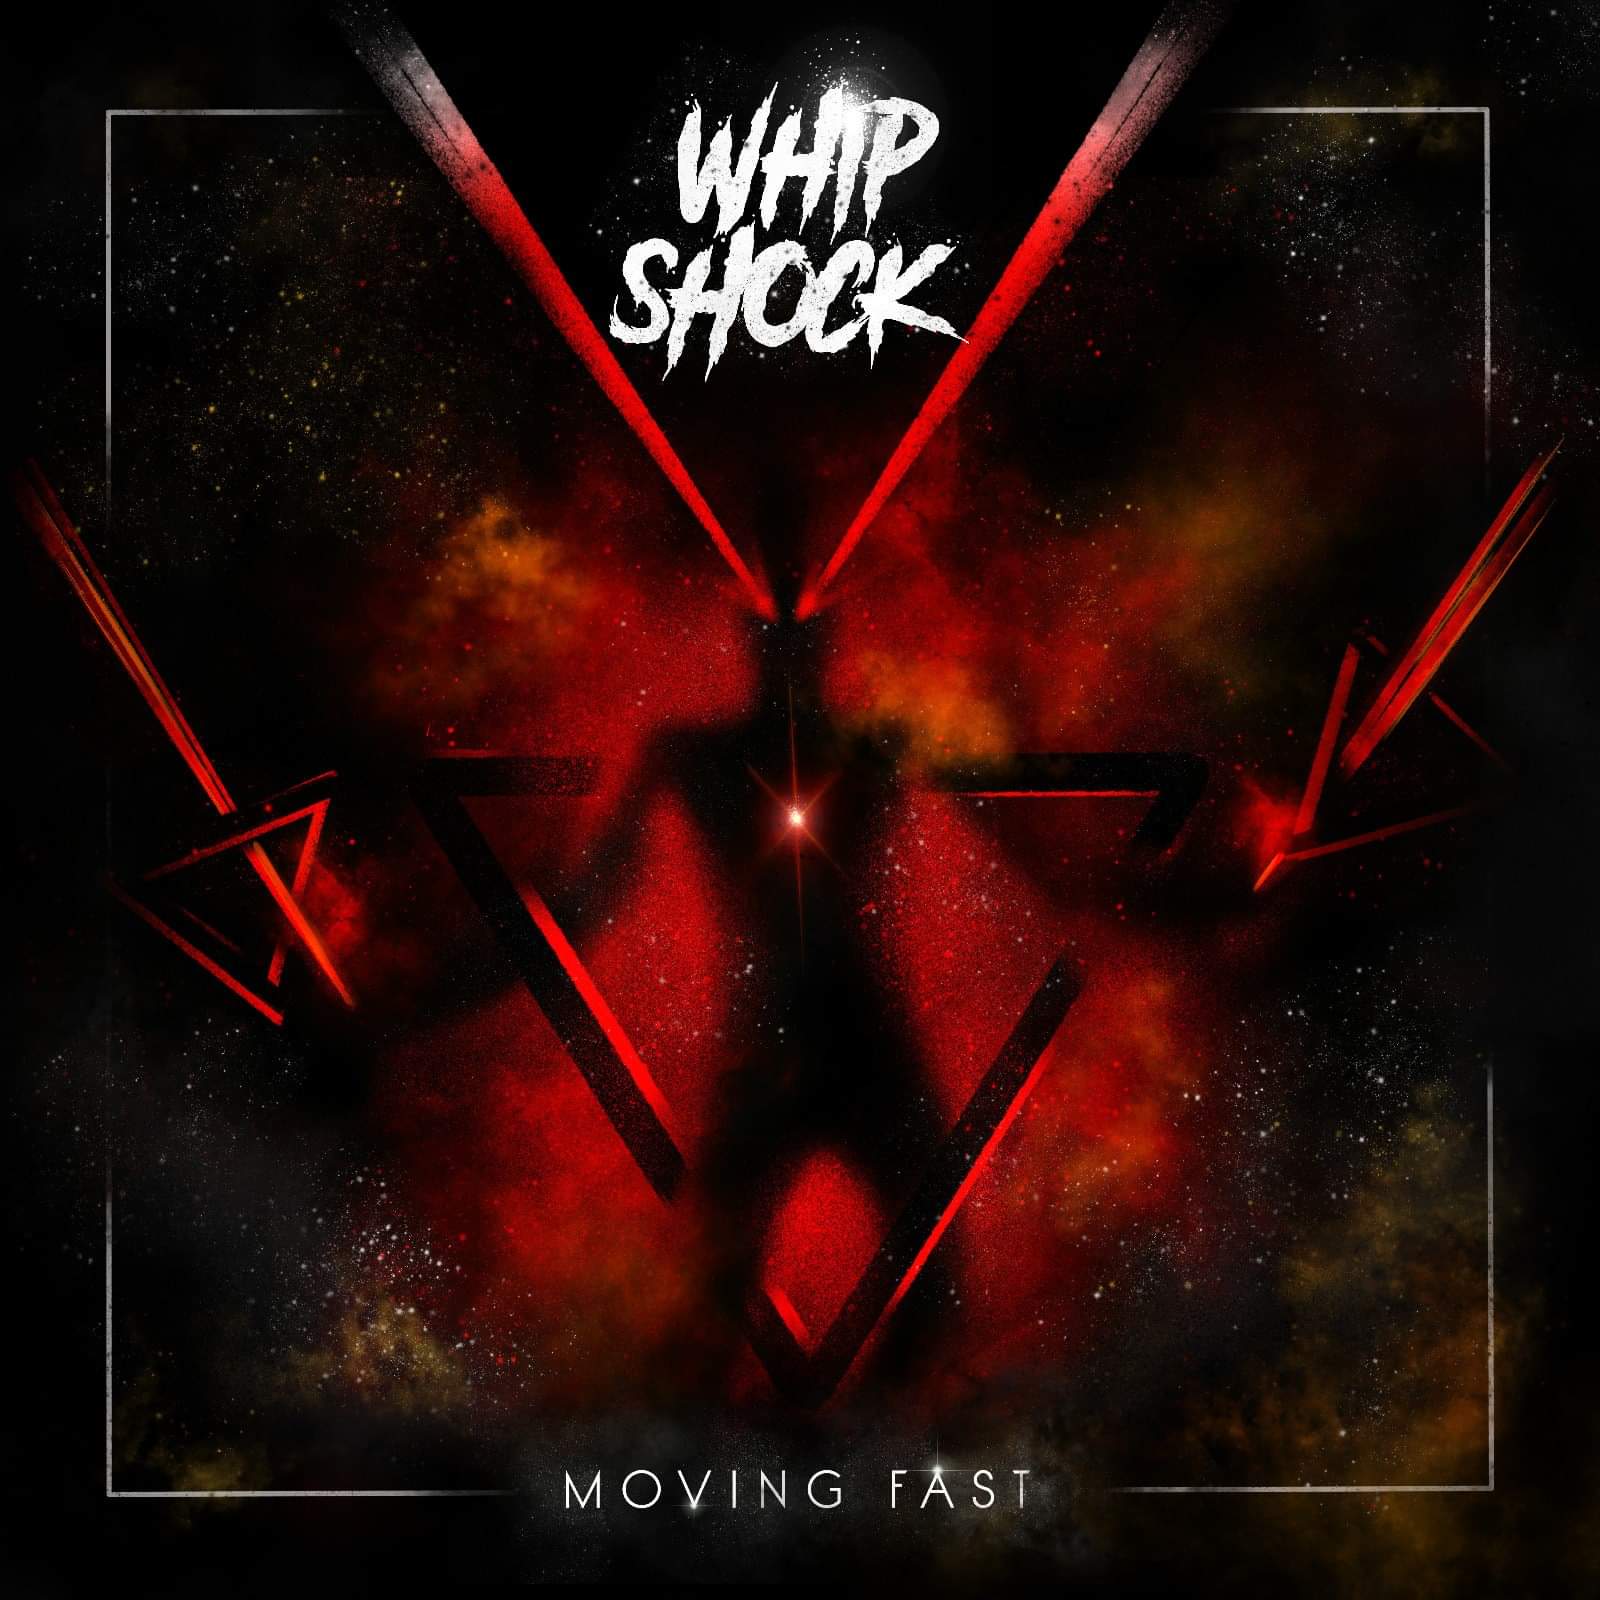 WHIP SHOCK presentan su disco “Moving fast” el 23 en Cádiz